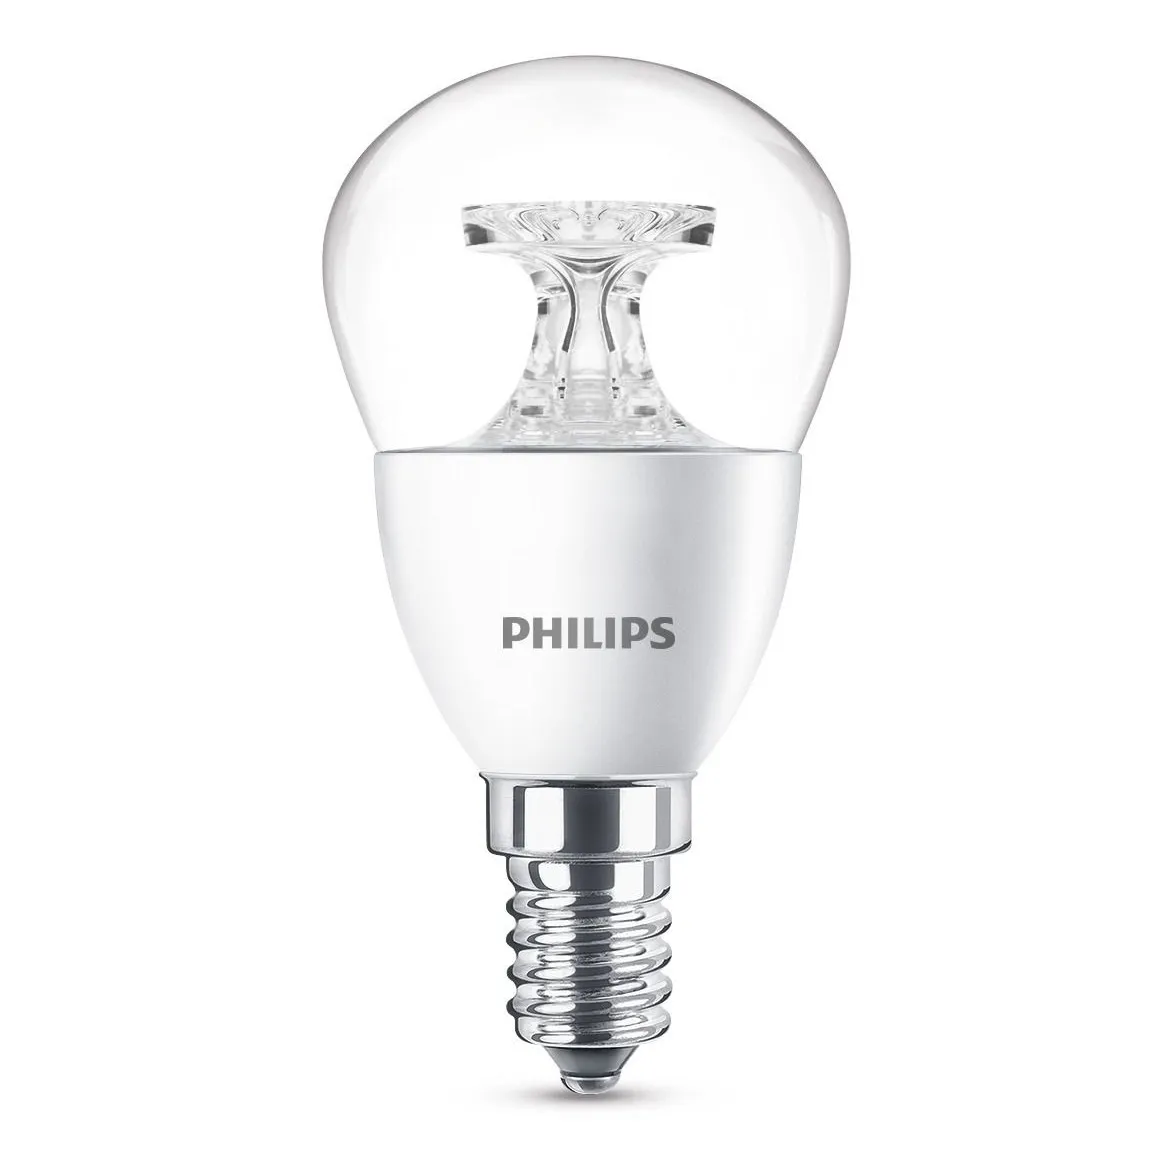 Philips LED lamp E14 4W 250Lm kogel helder